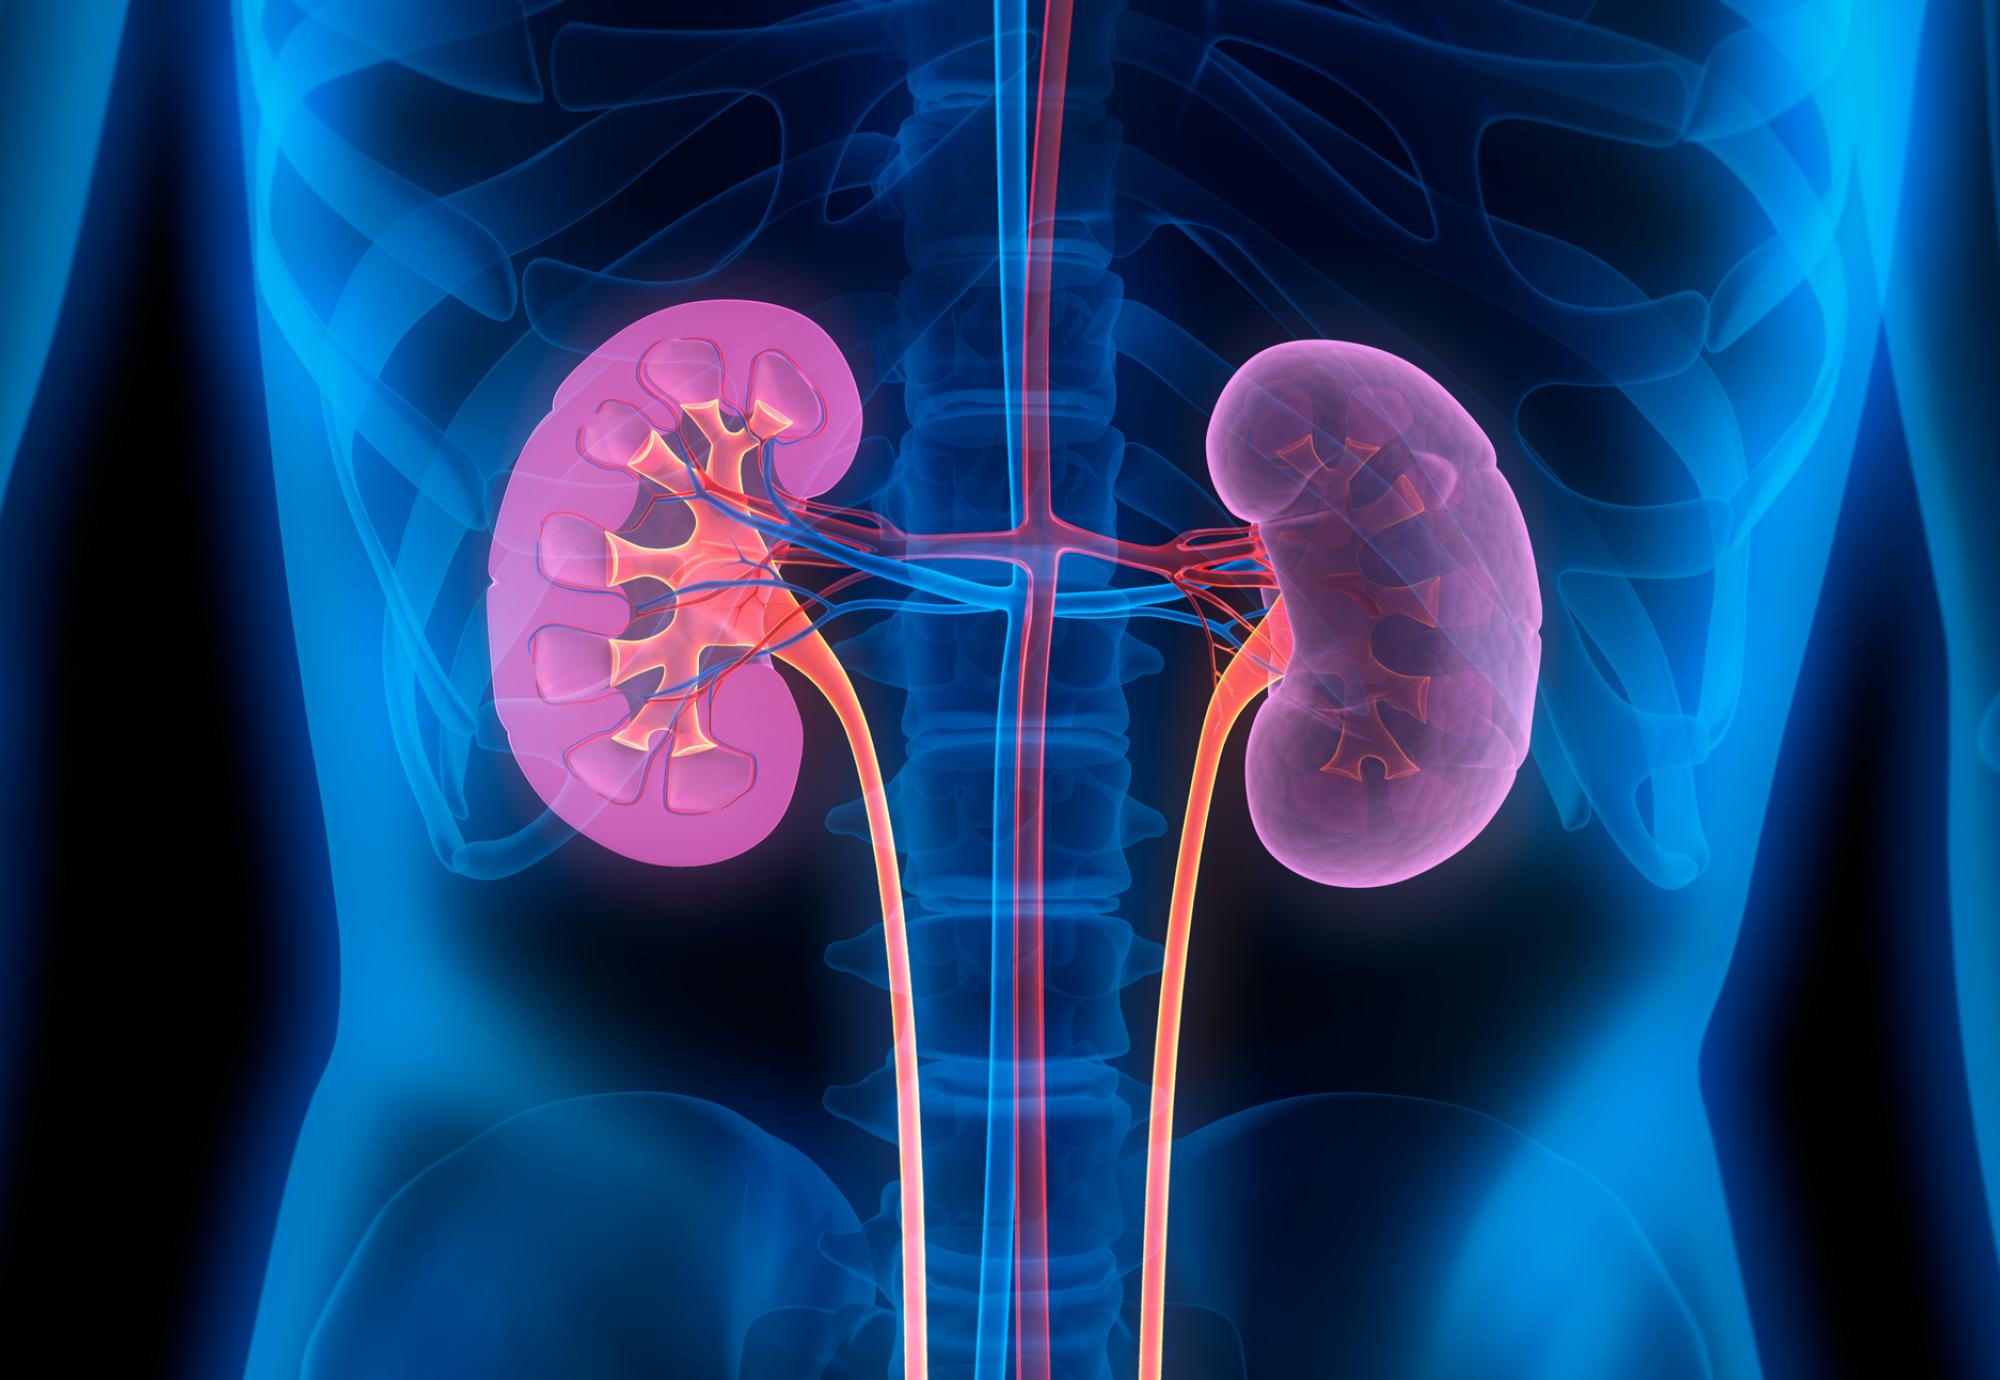 Artist illustration of kidneys